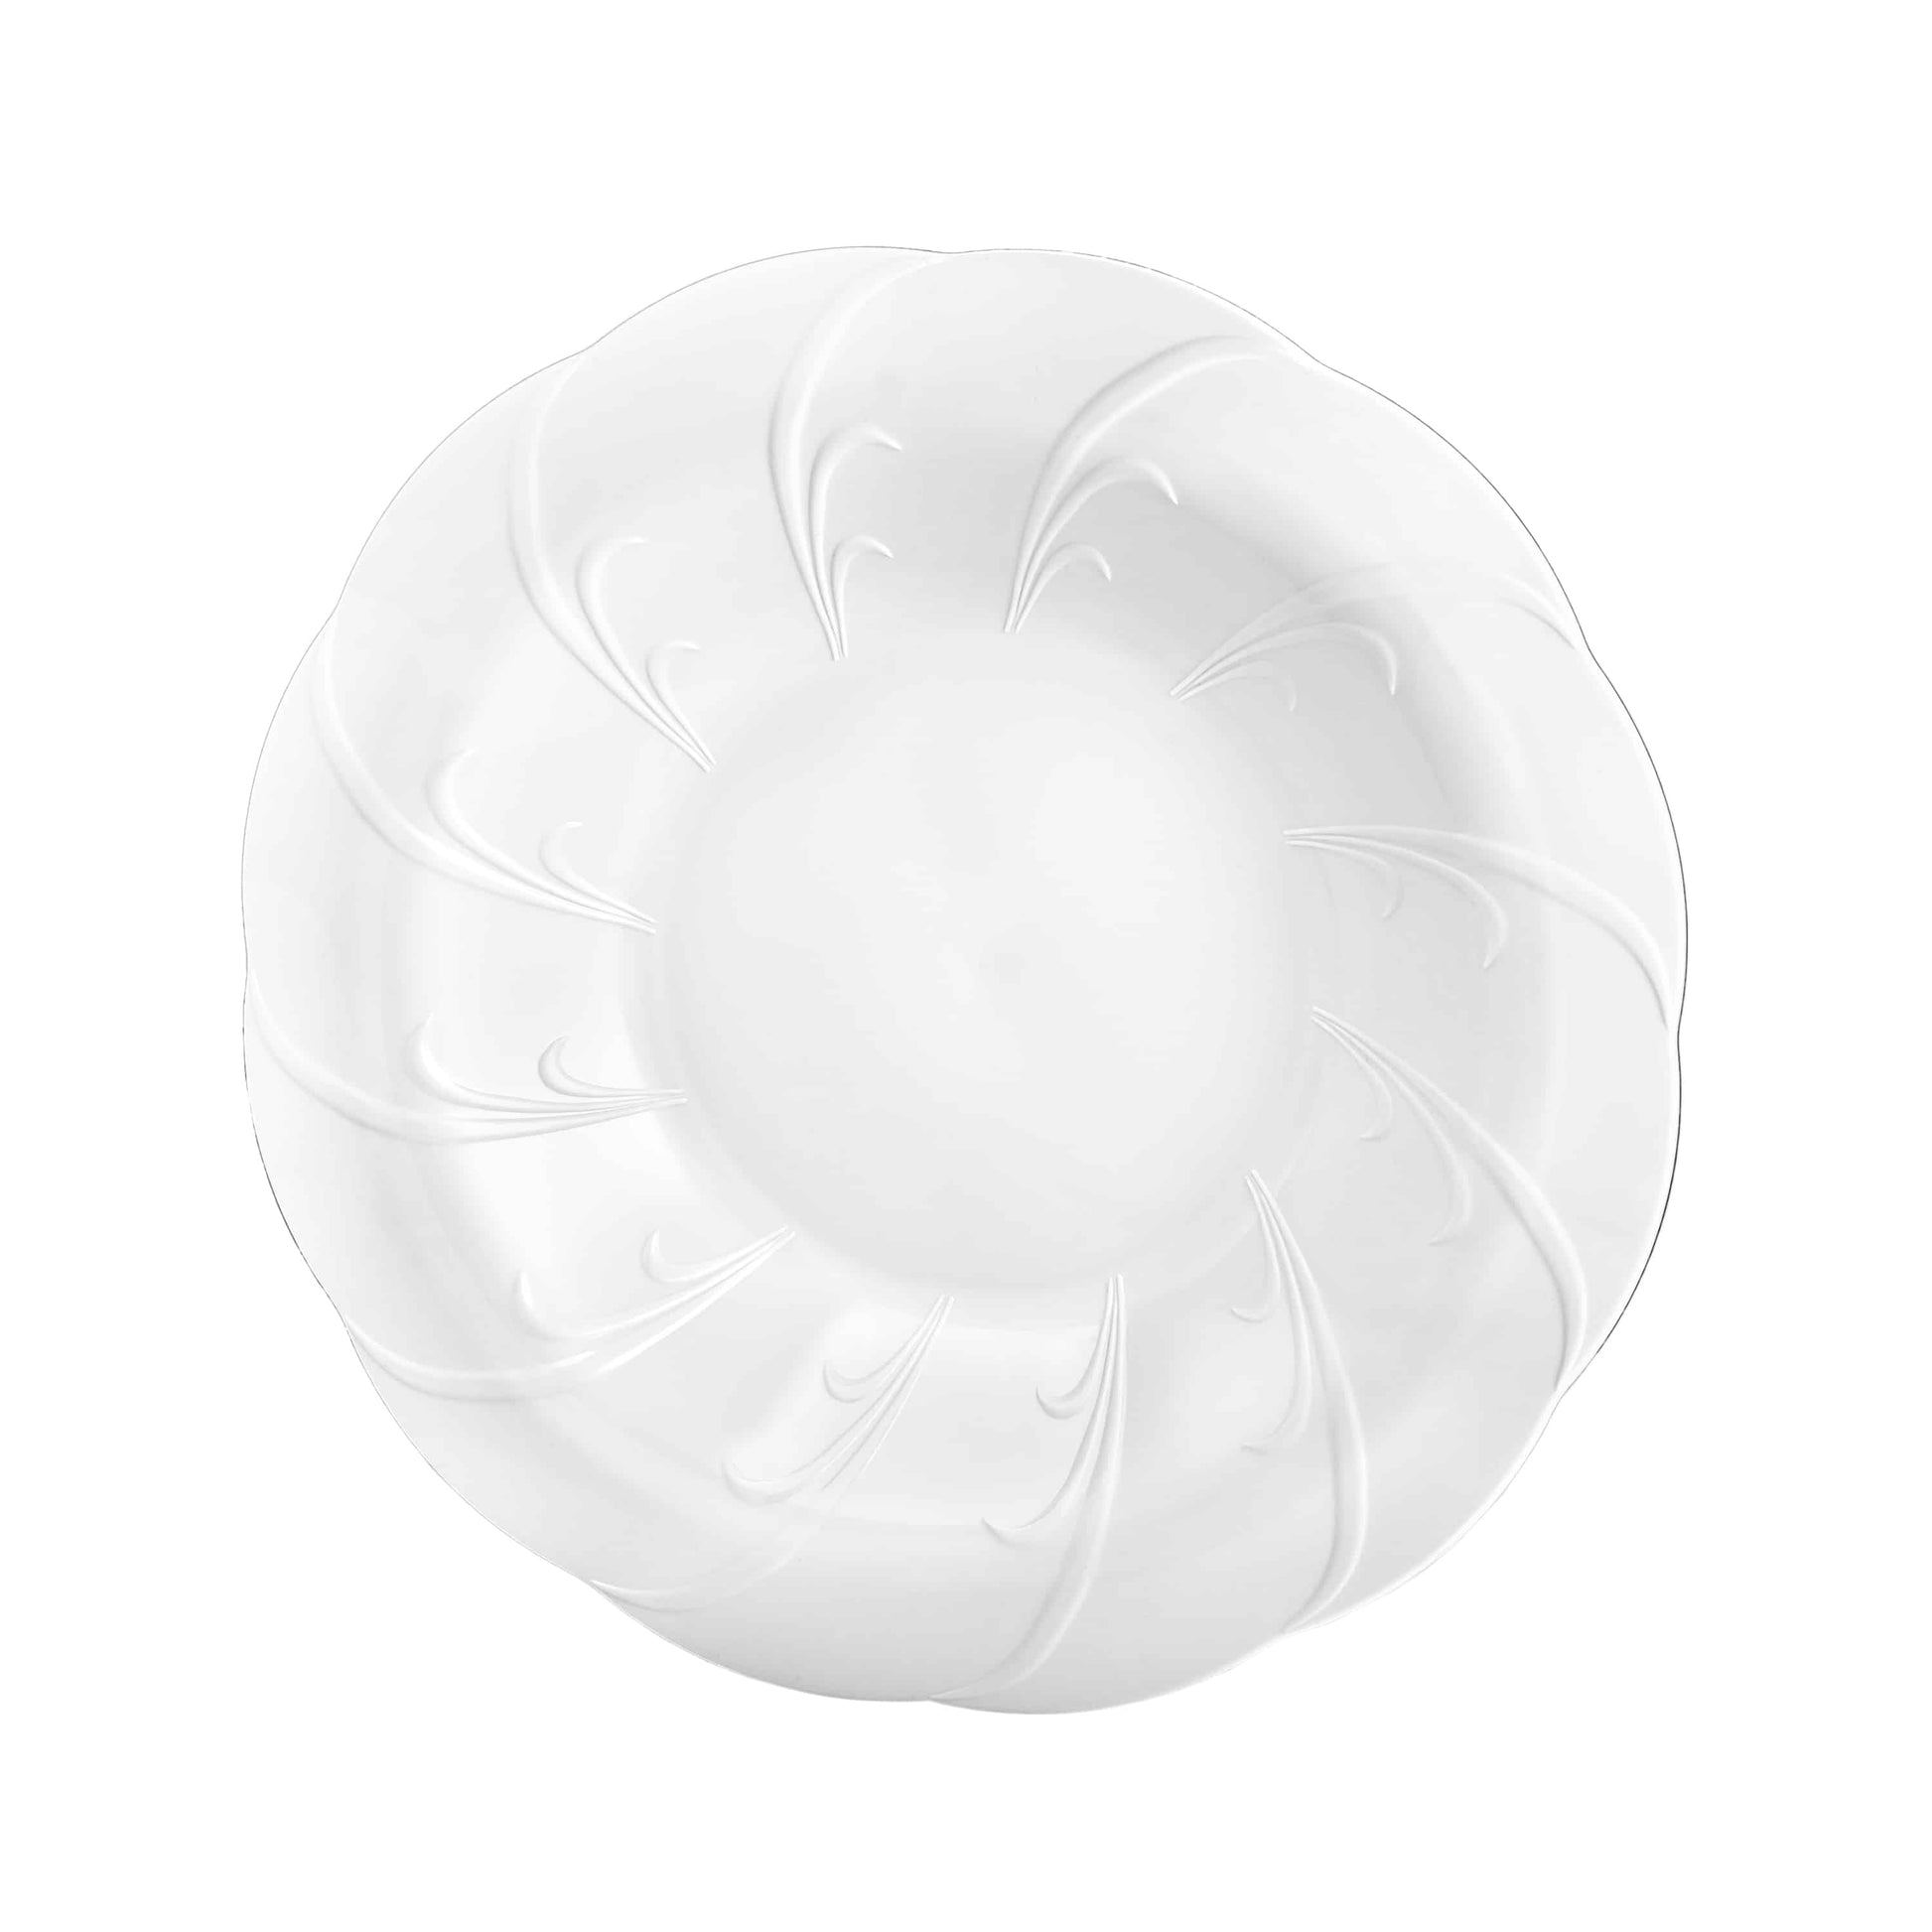 Elegance Premium Plastic Round Dinner Bowl